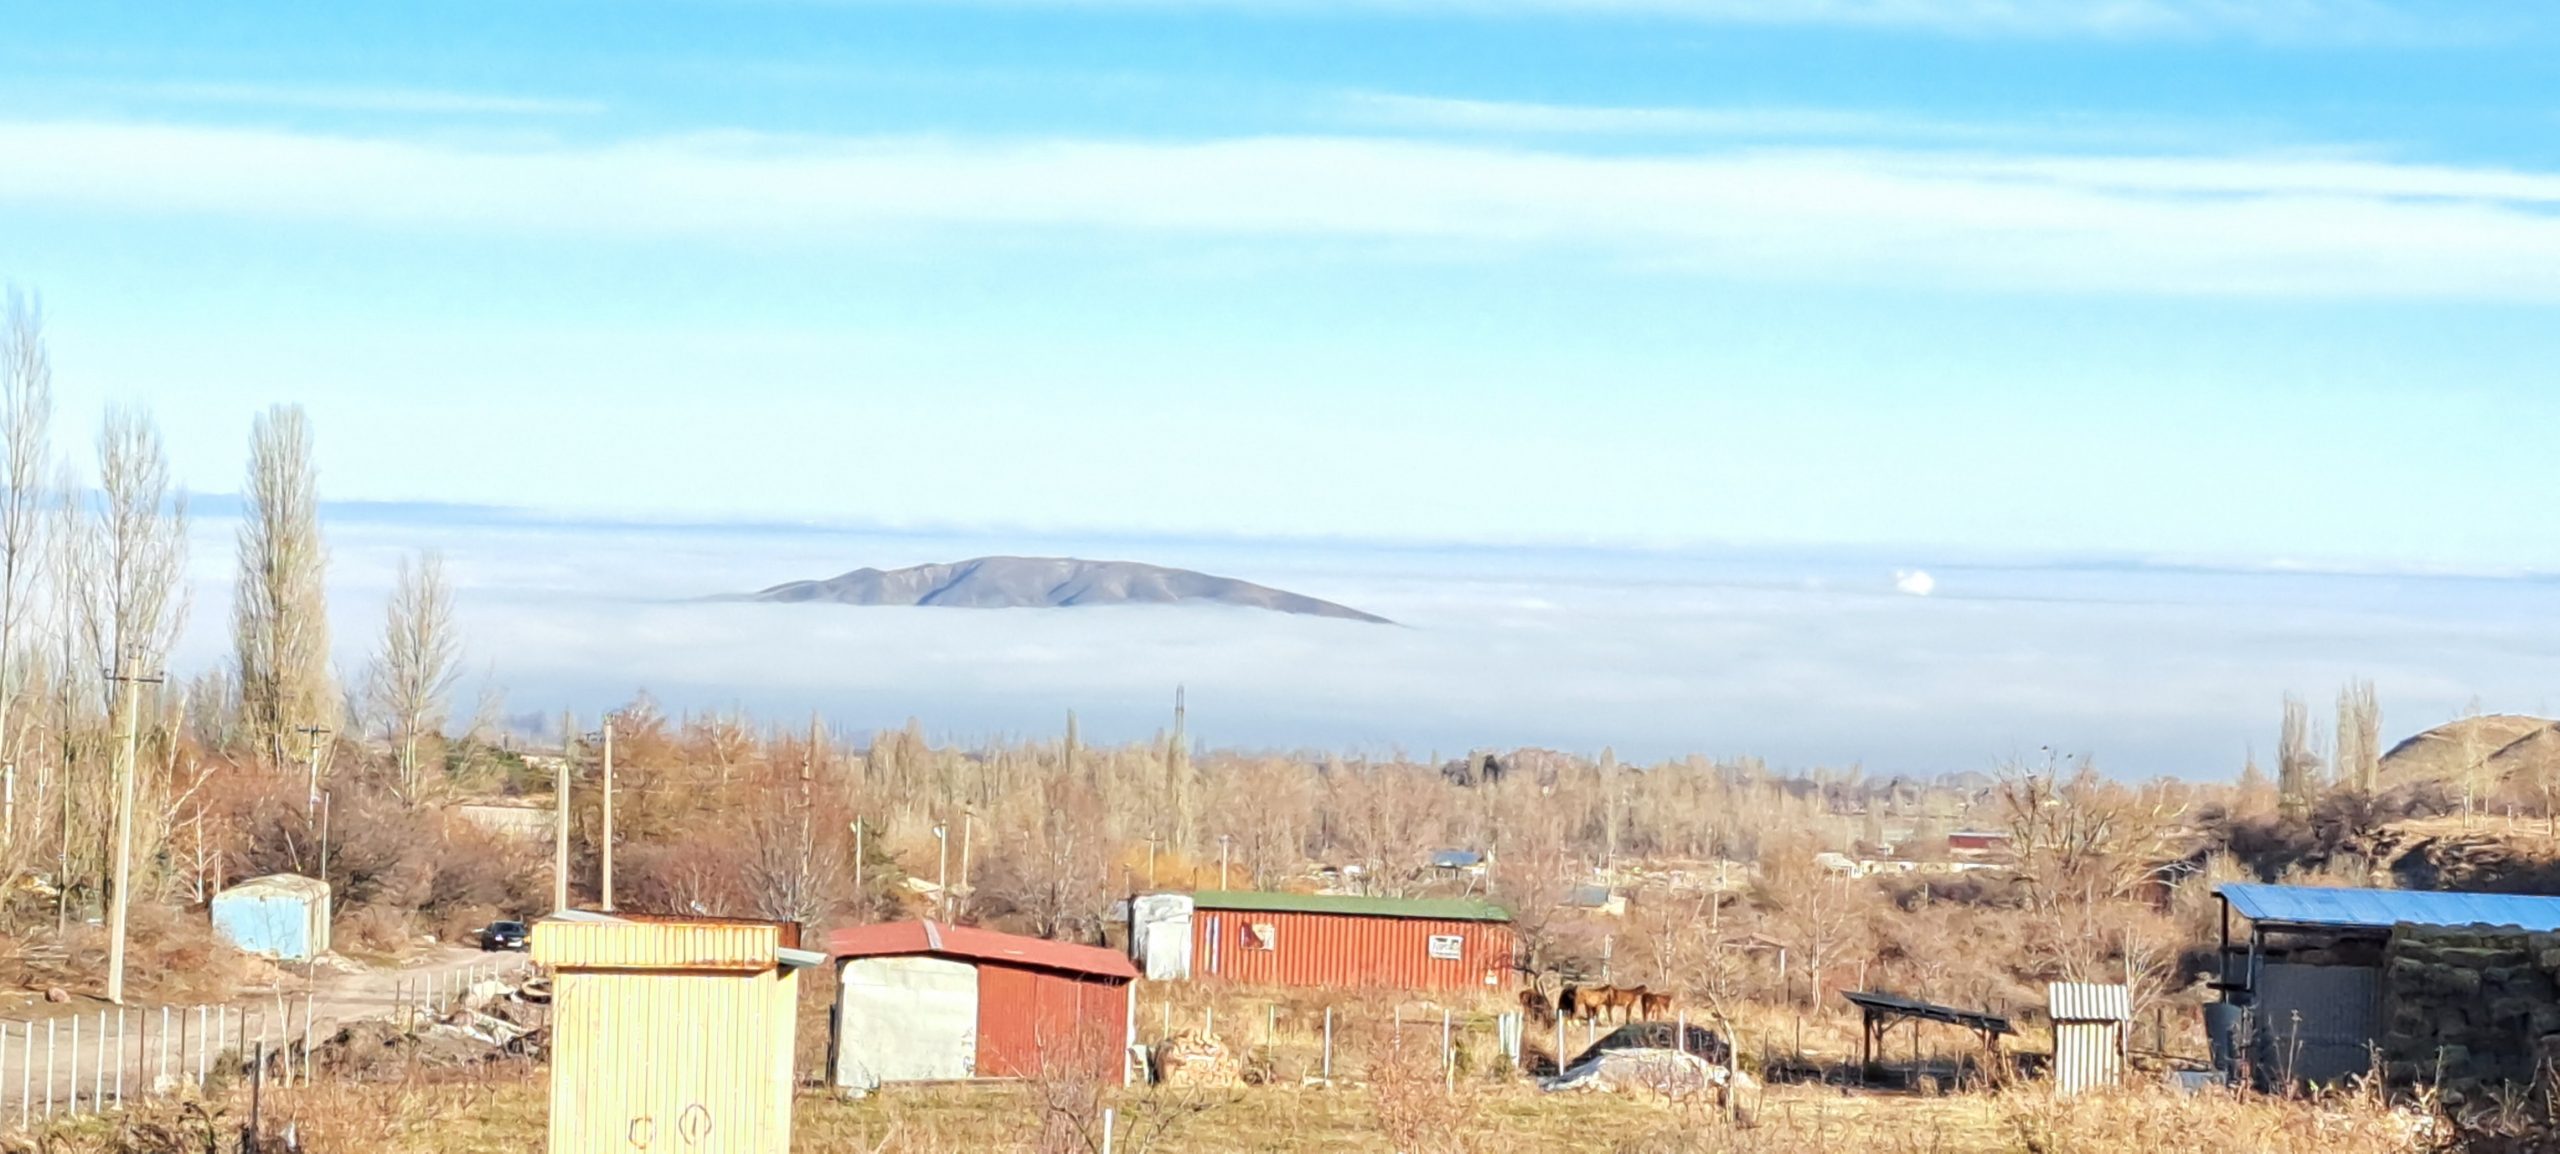 Bishkek under fog